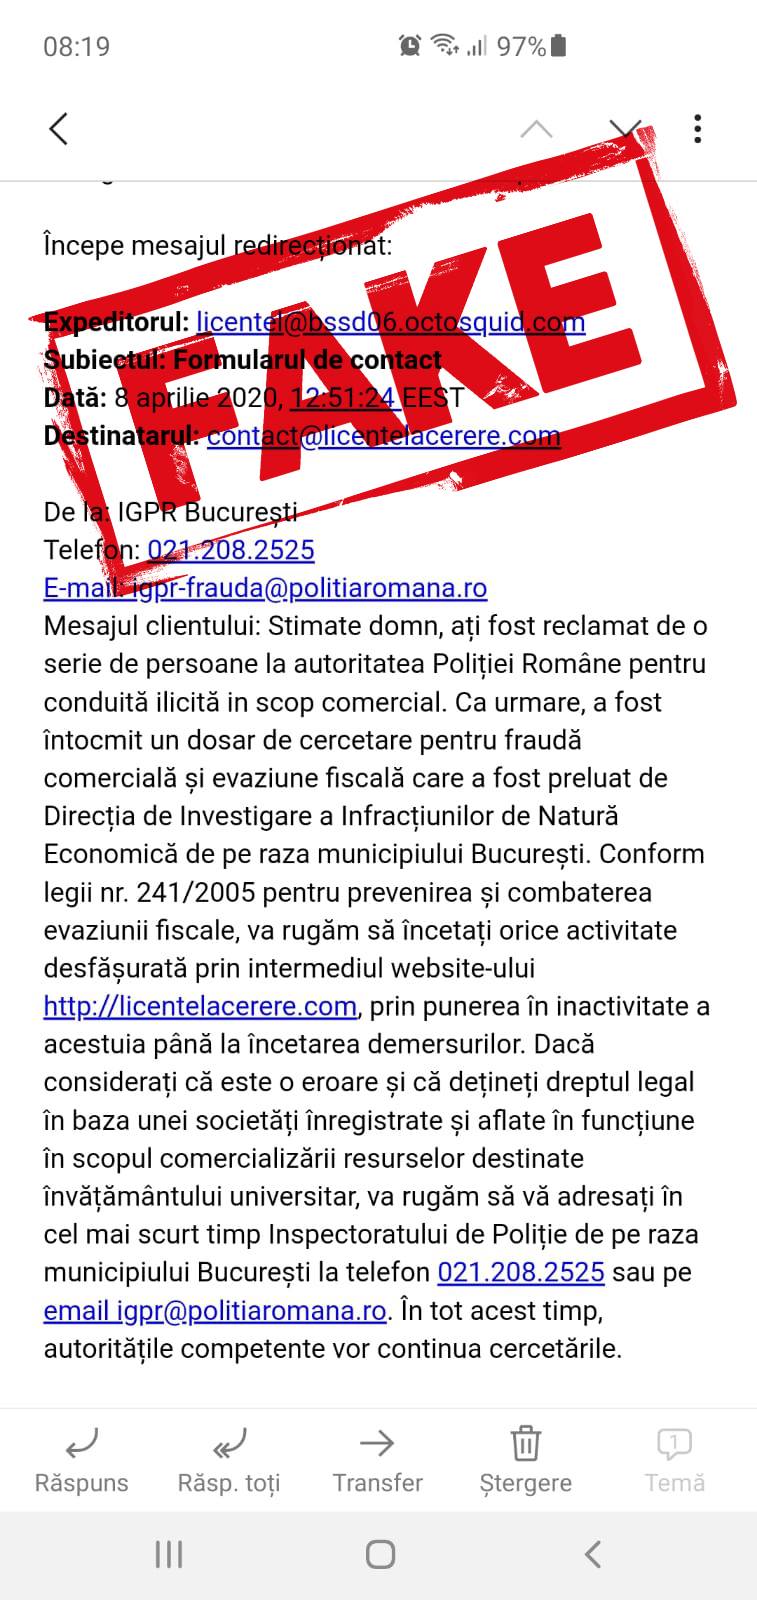 Romanian police investigating phishing